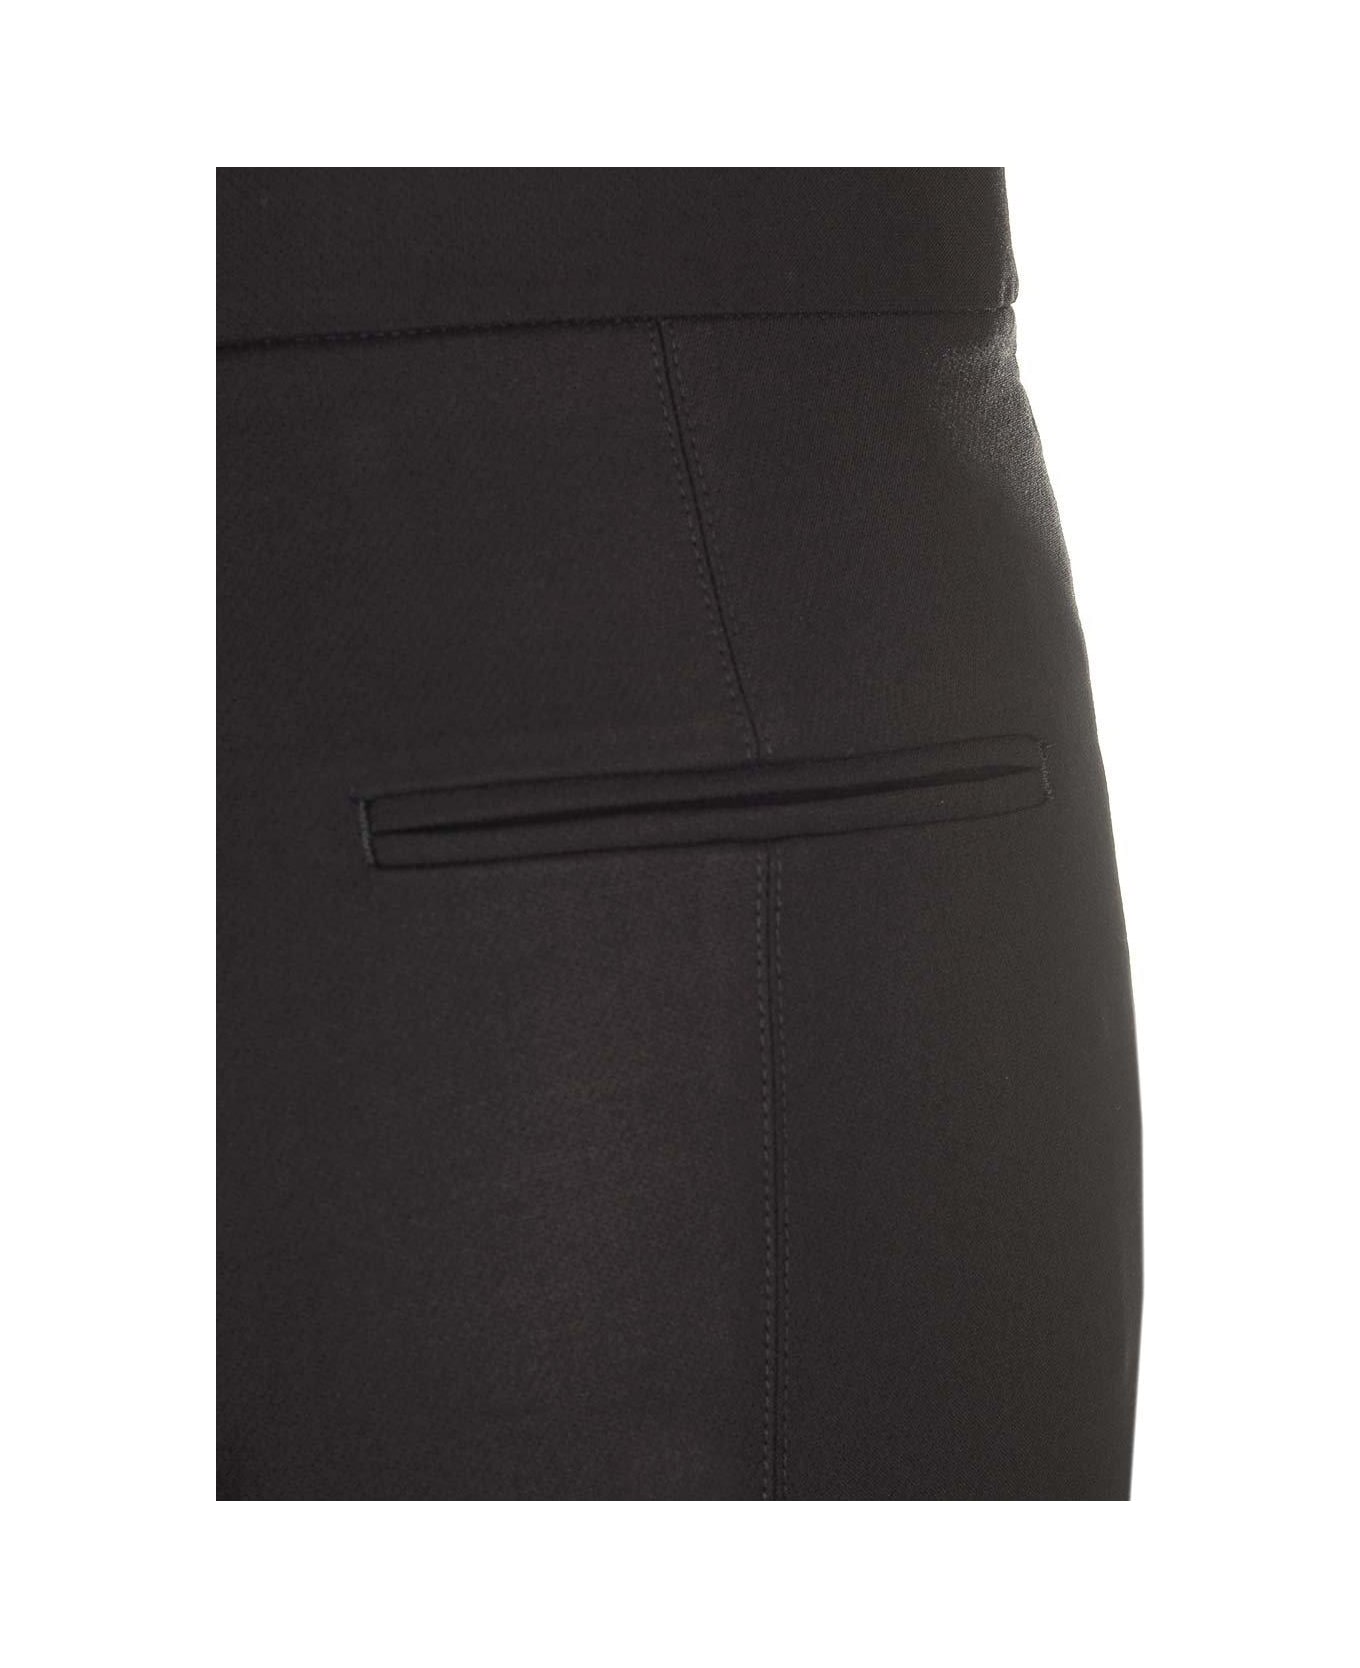 Totême High-waisted Slim-cut Trousers - BLACK 001 ボトムス